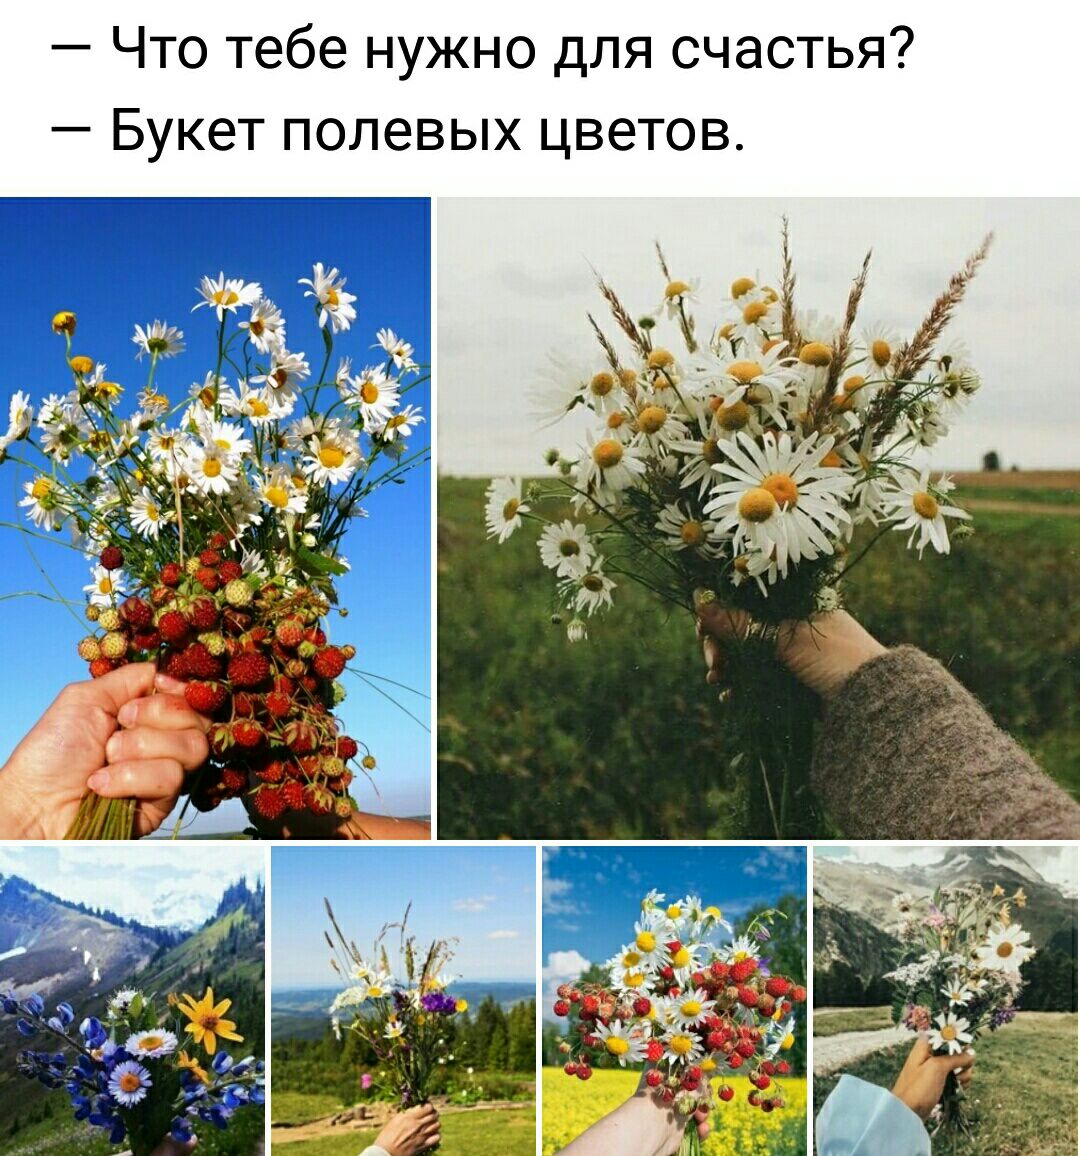 Что тебе нужно для счастья Букет полевых цветов